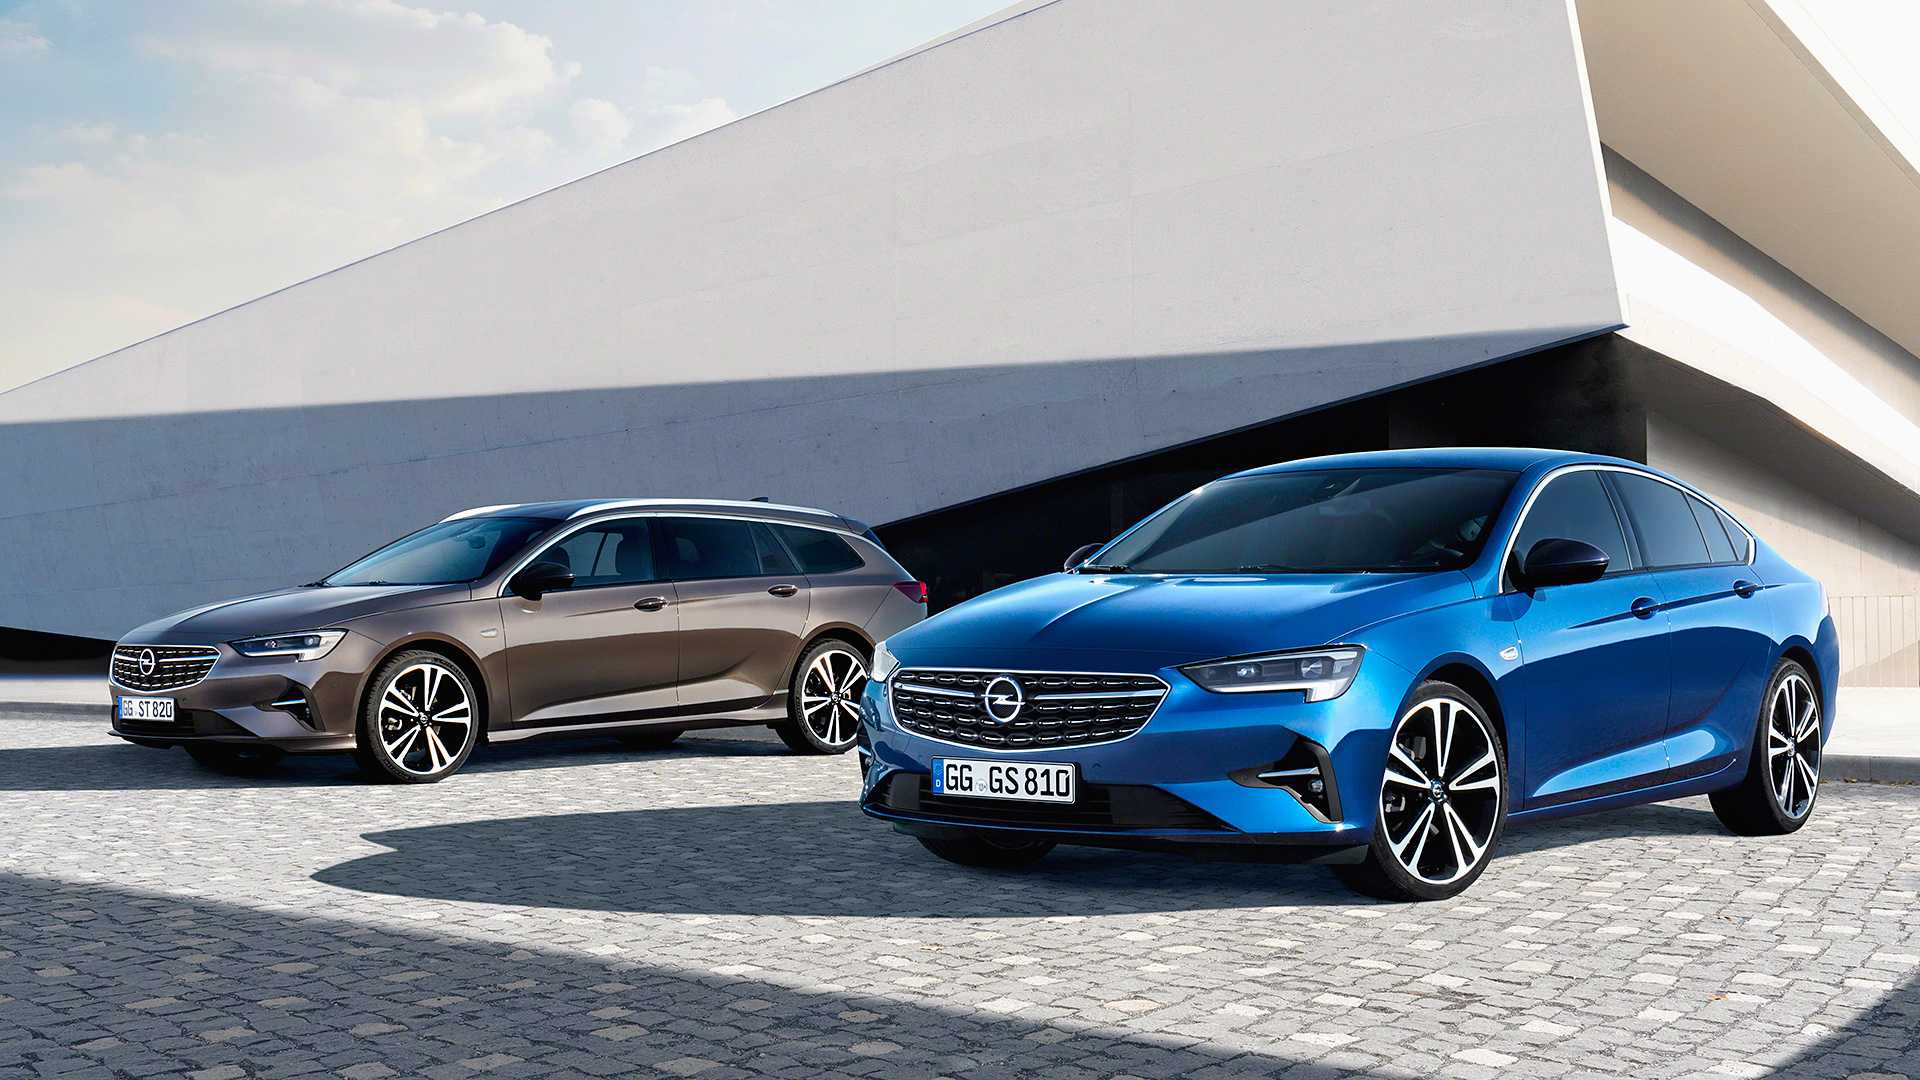 Opel Insignia poluchit novuyu korobku peredach